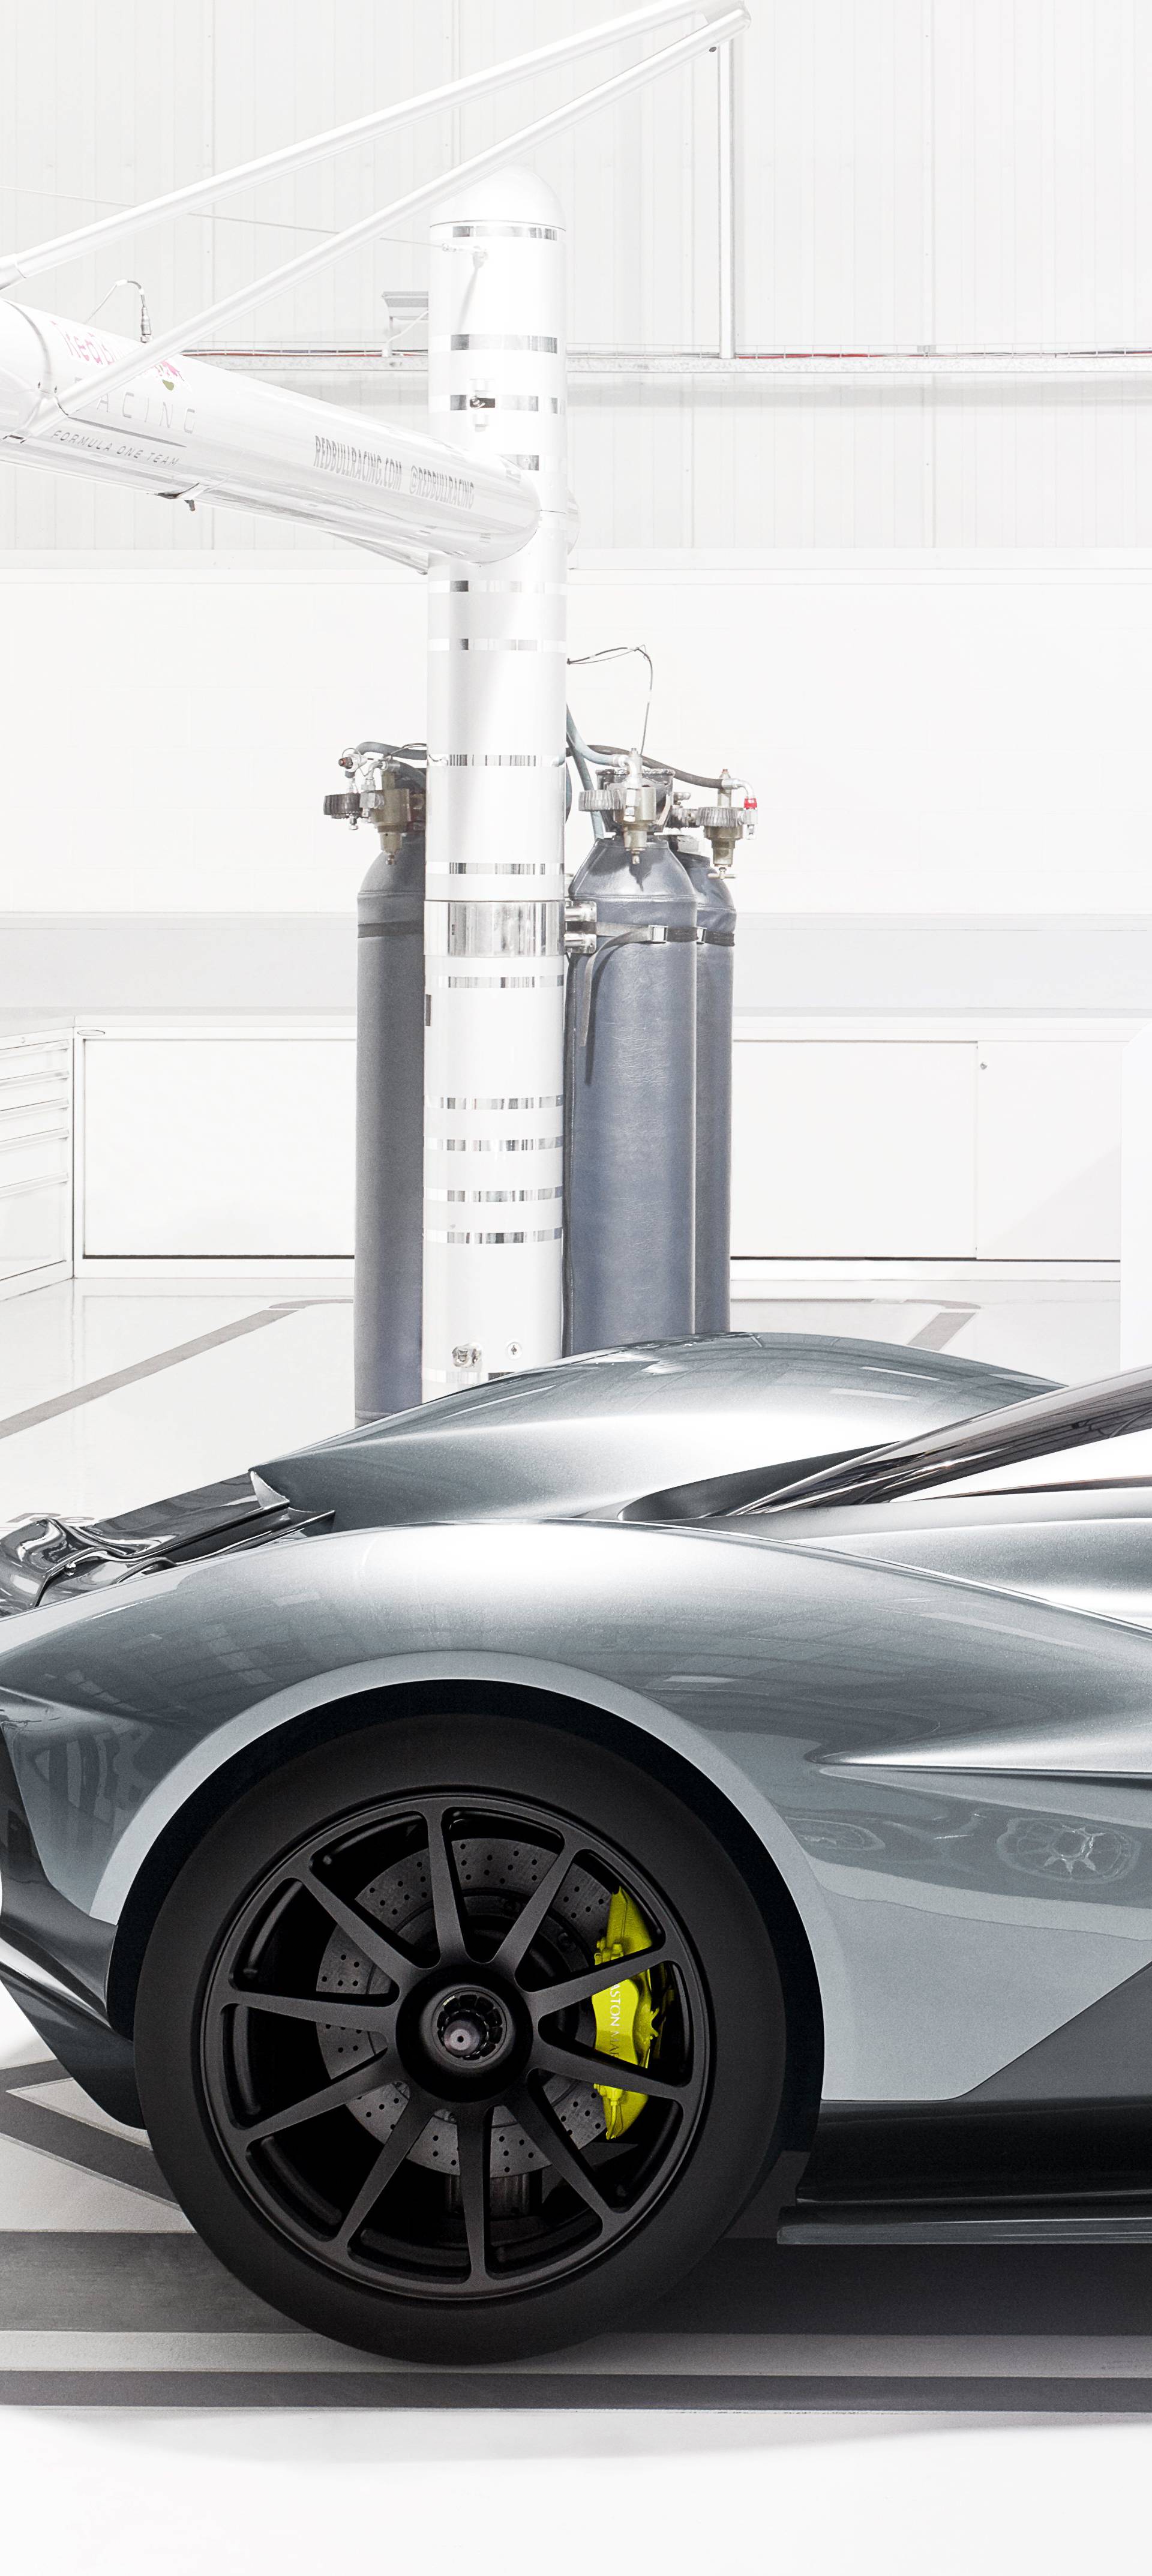 Rimac se hvali: Rade bateriju za ovo čudo od  Aston Martina